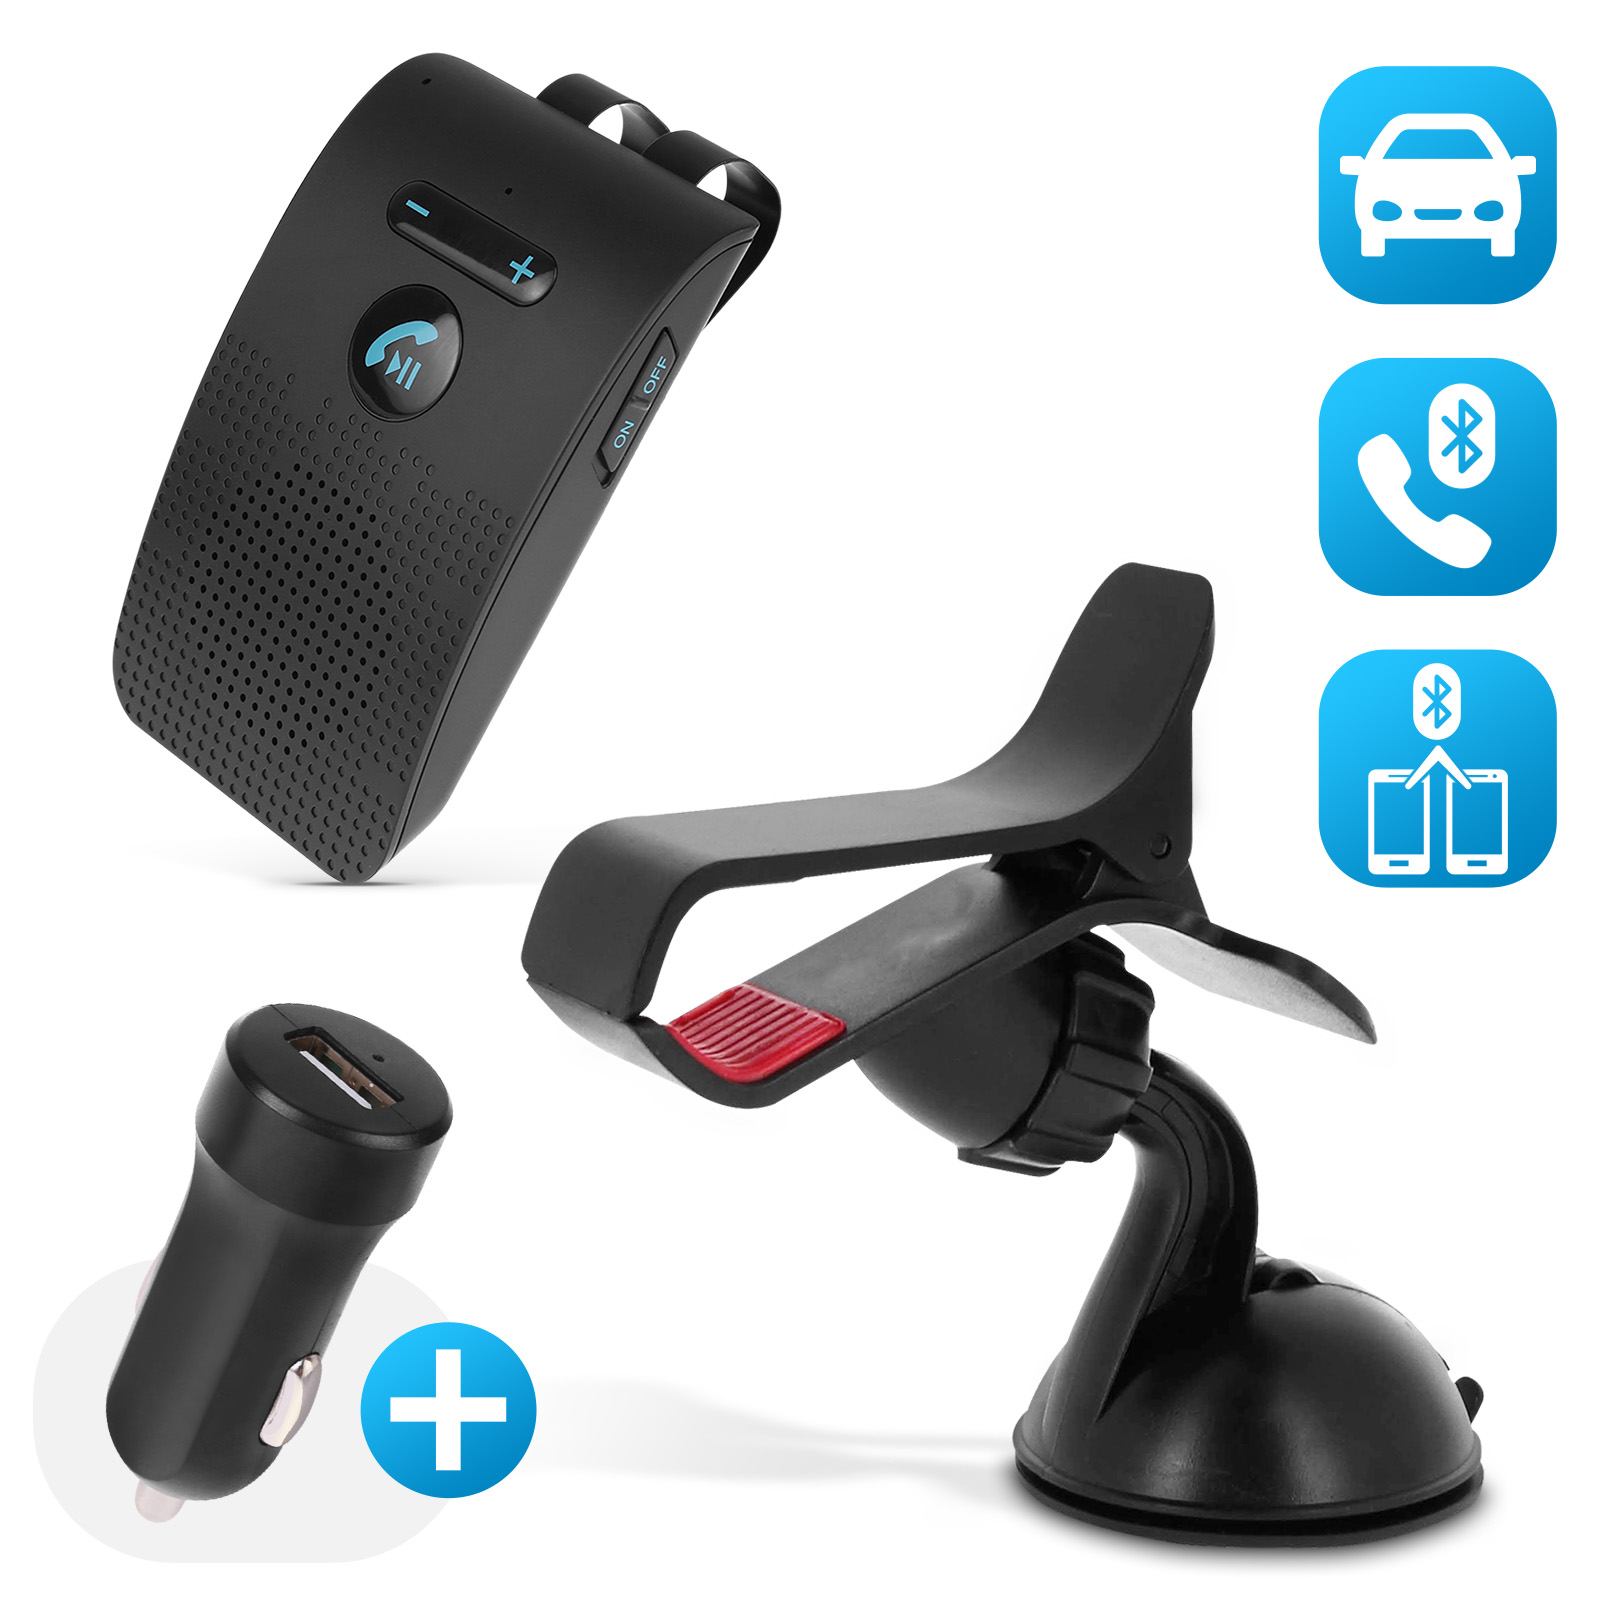 Auto Kfz Bluetooth Freisprecheinrichtung Sonnenblende für Handy Smartphone, Freisprecheinrichtung, Mobilfunk, Telefon & Mobilfunk, Elektronik